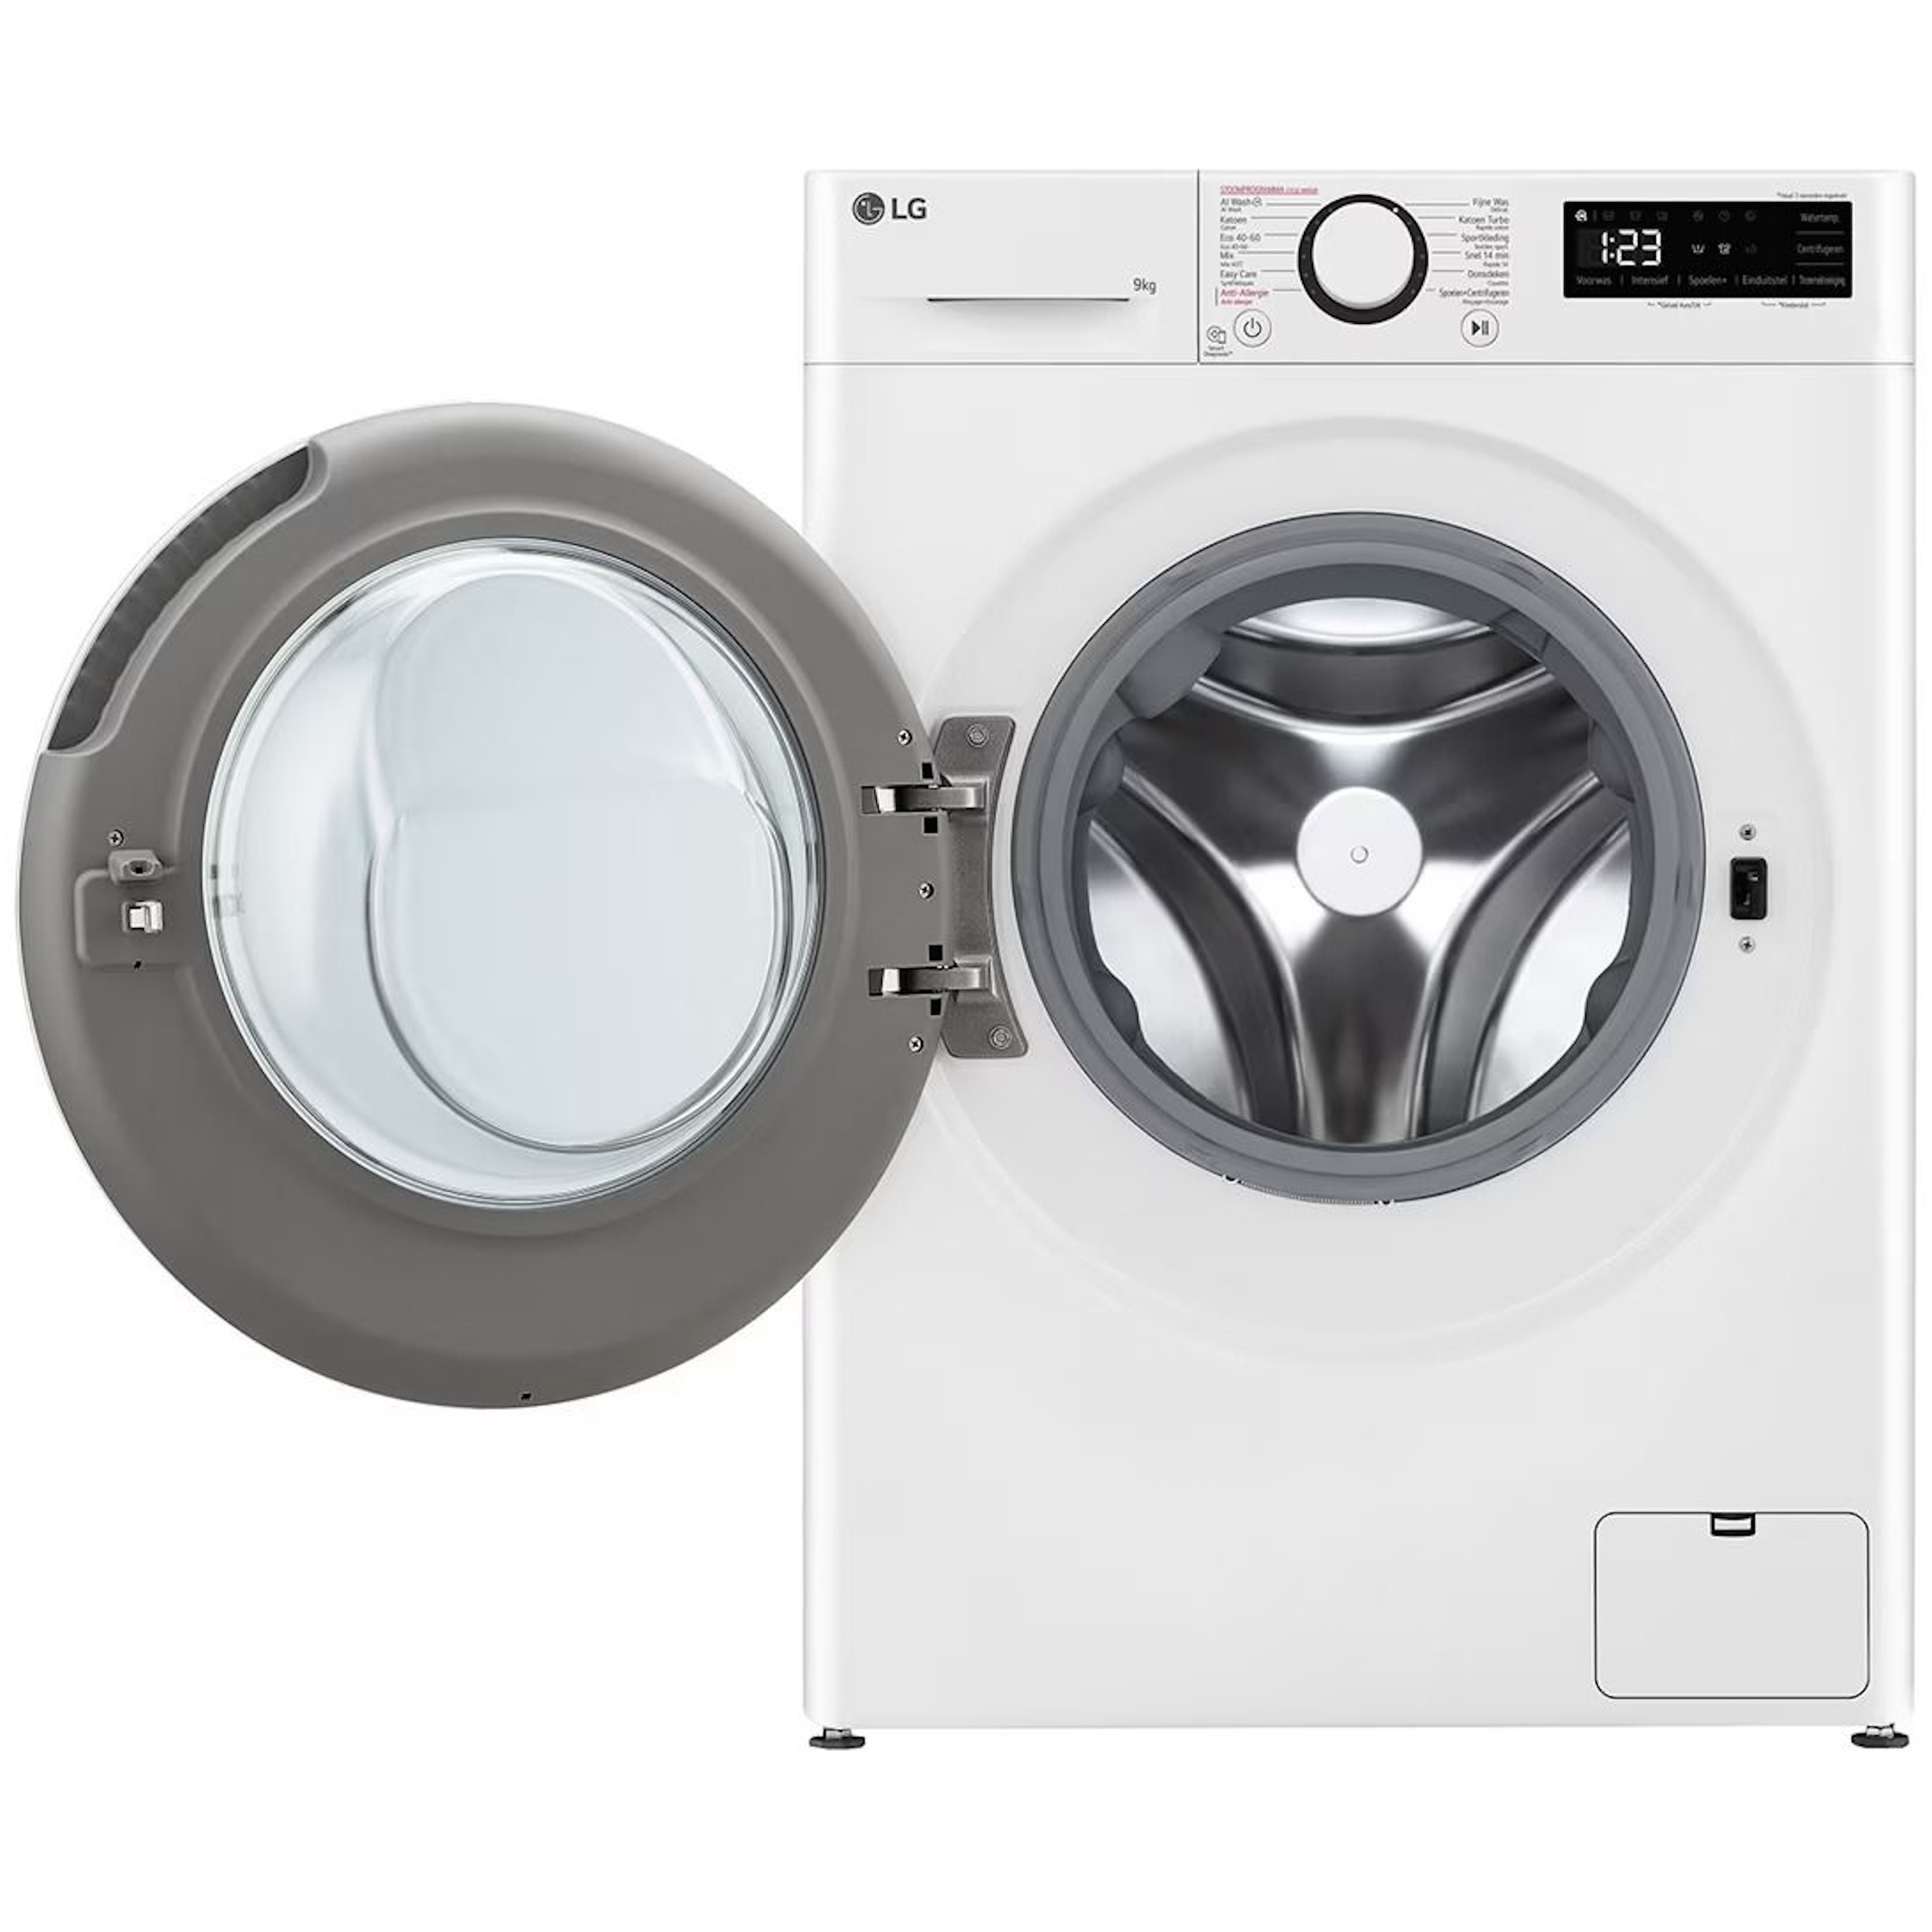 LG wasmachine GC3R509S0 afbeelding 3